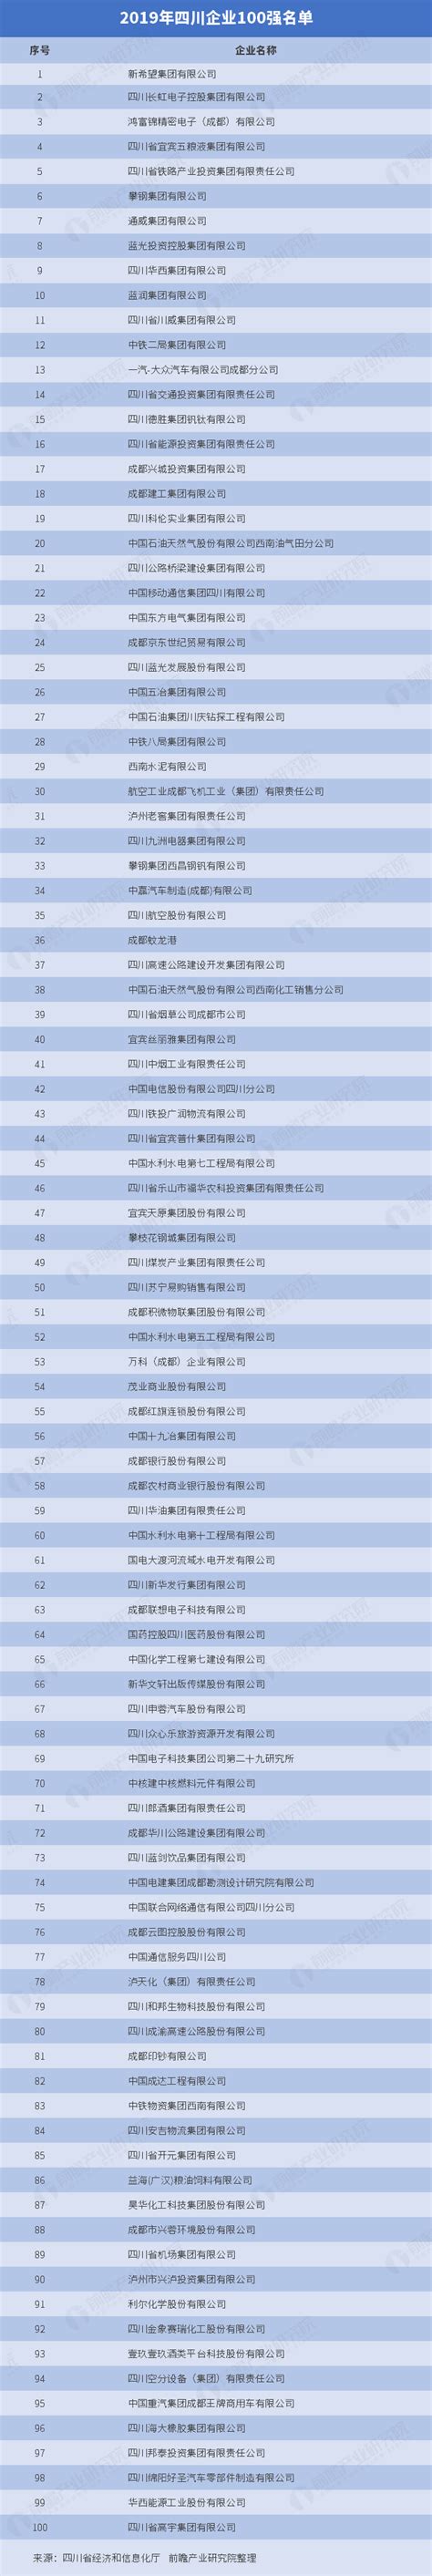 2019年四川企业100强名单_研究报告 - 前瞻产业研究院